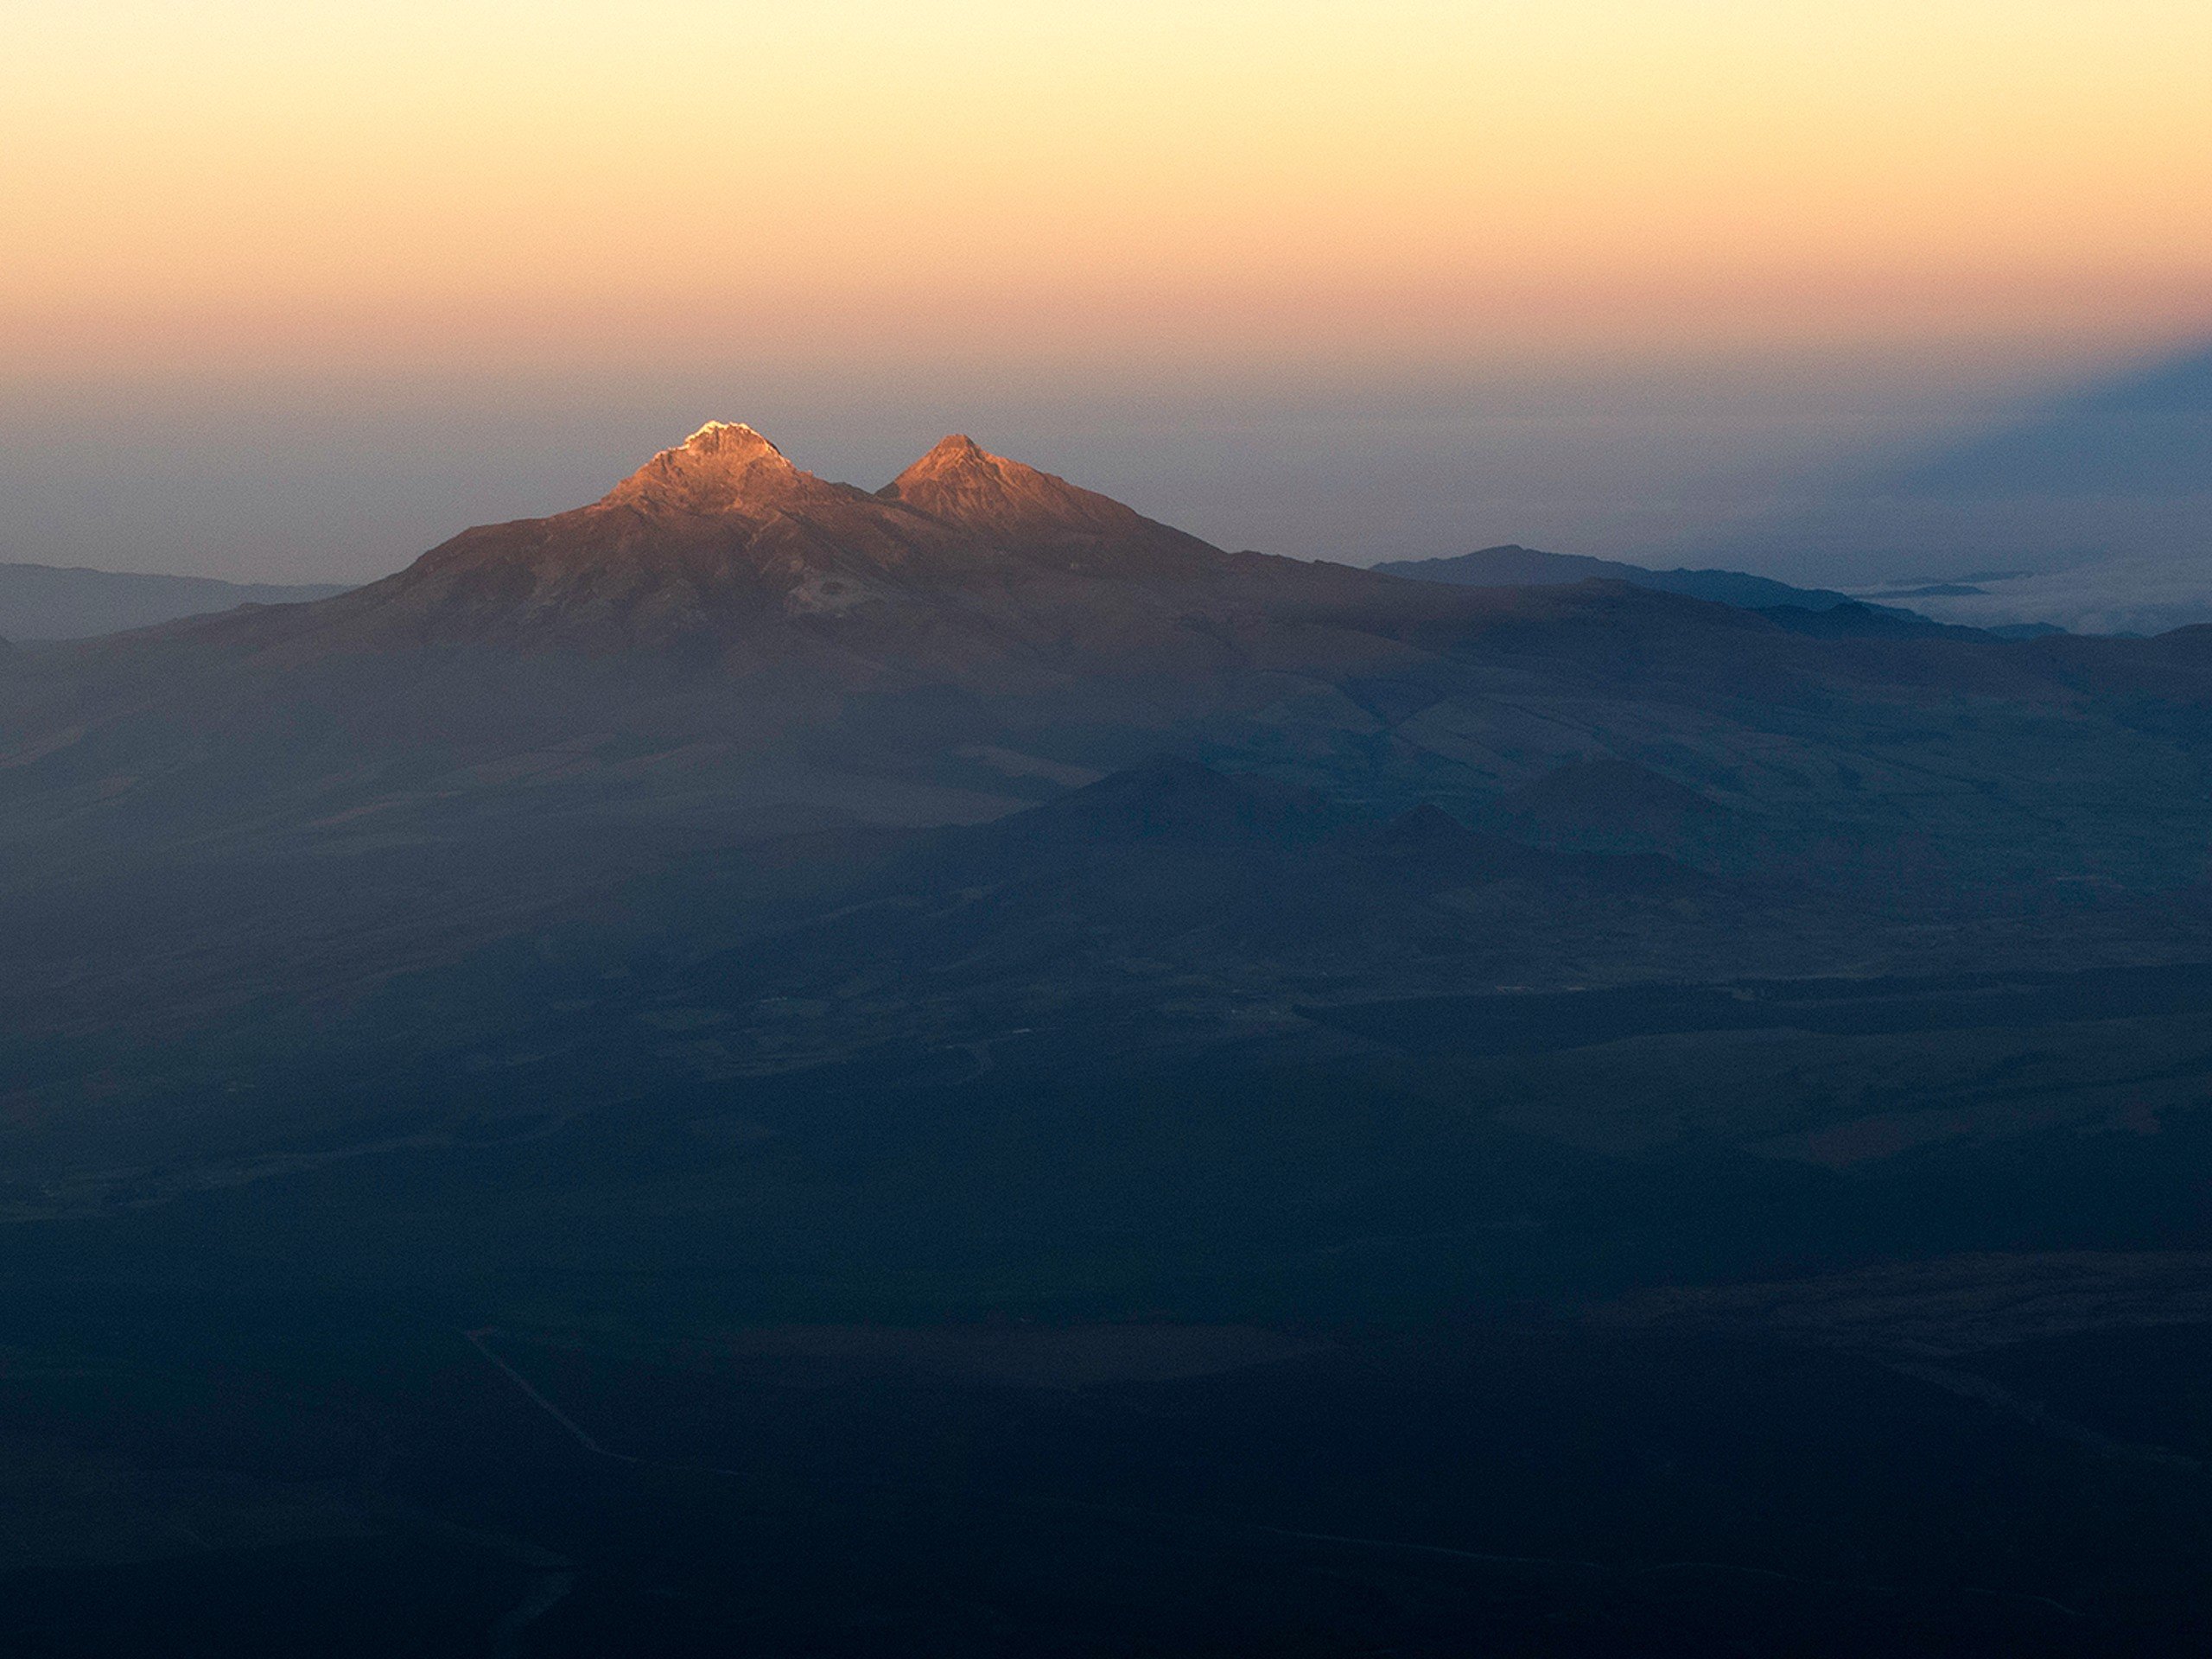 Sunrise on the peaks surrounding Chimborazo